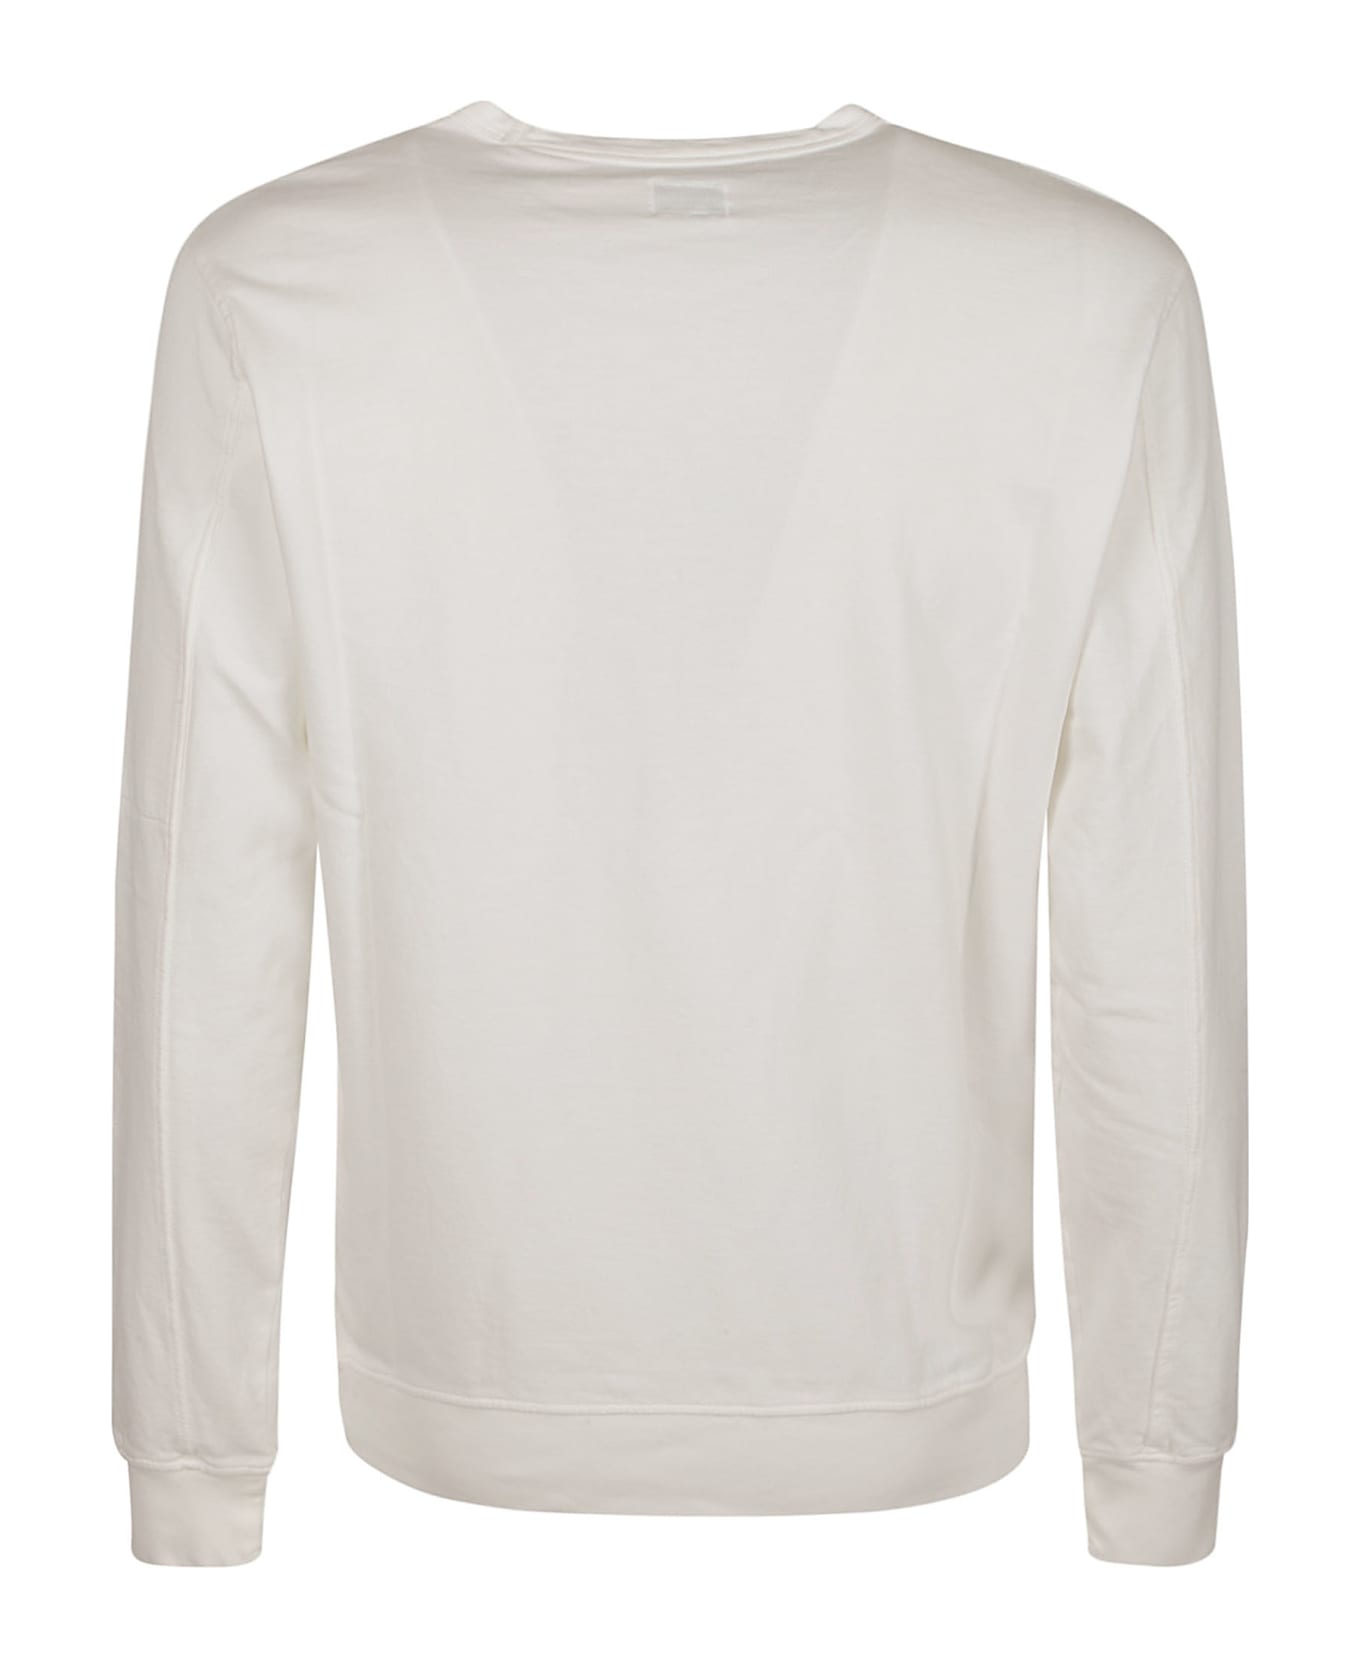 C.P. Company Light Fleece Sweatshirt - GAUZEWHITE